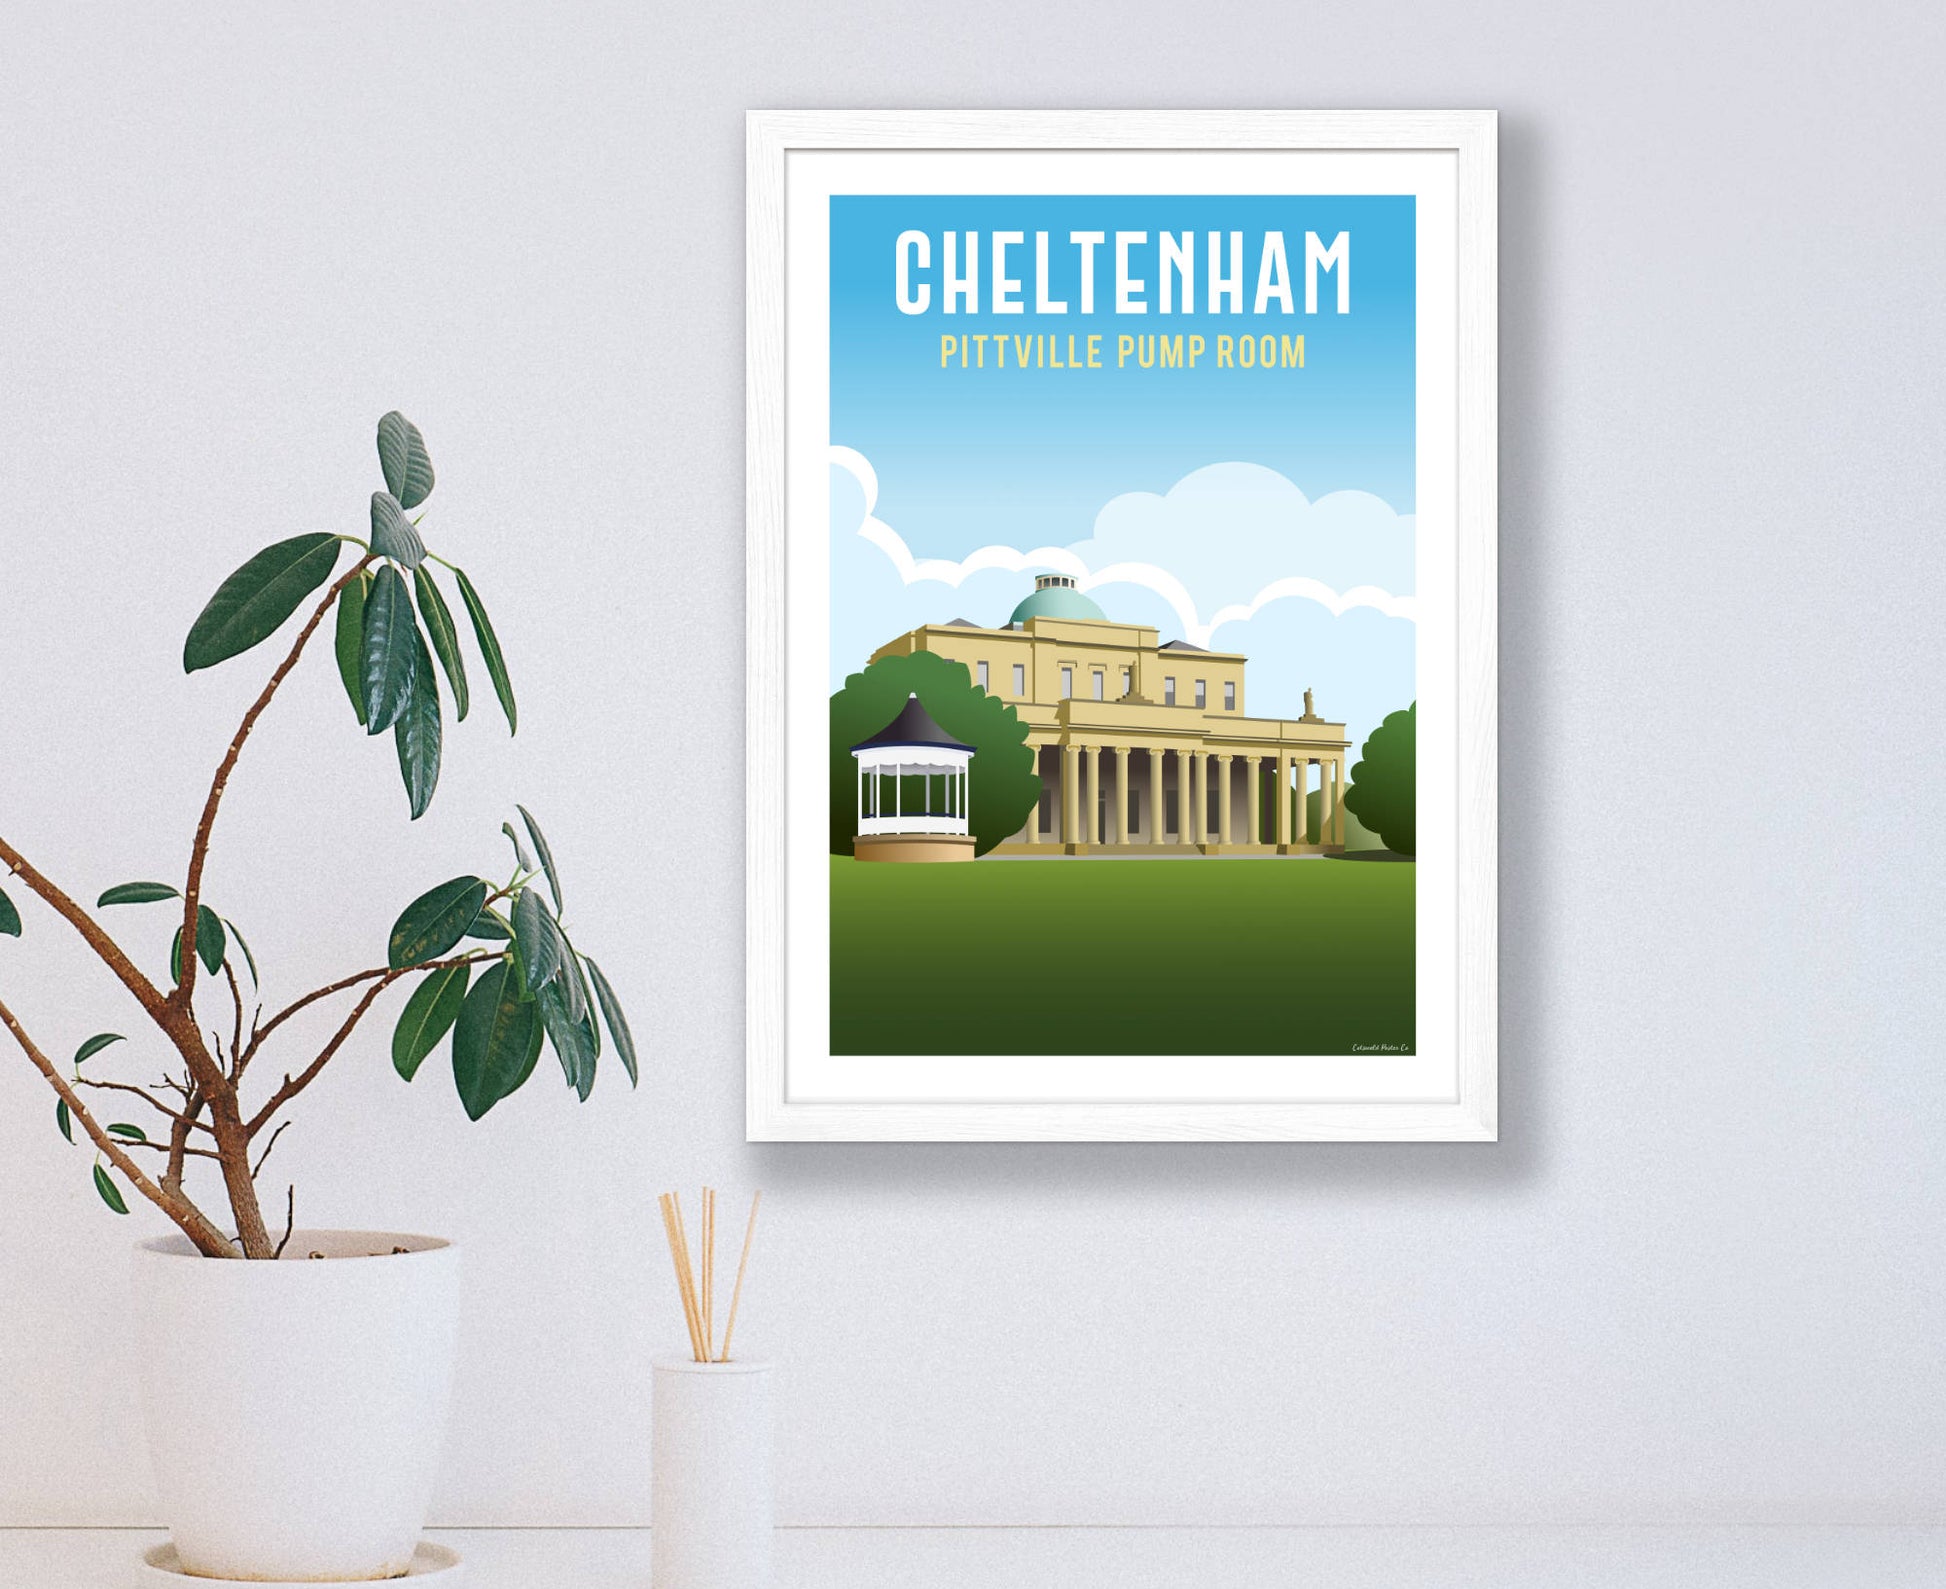 Cheltenham Pittville Pump Room Poster in white frame